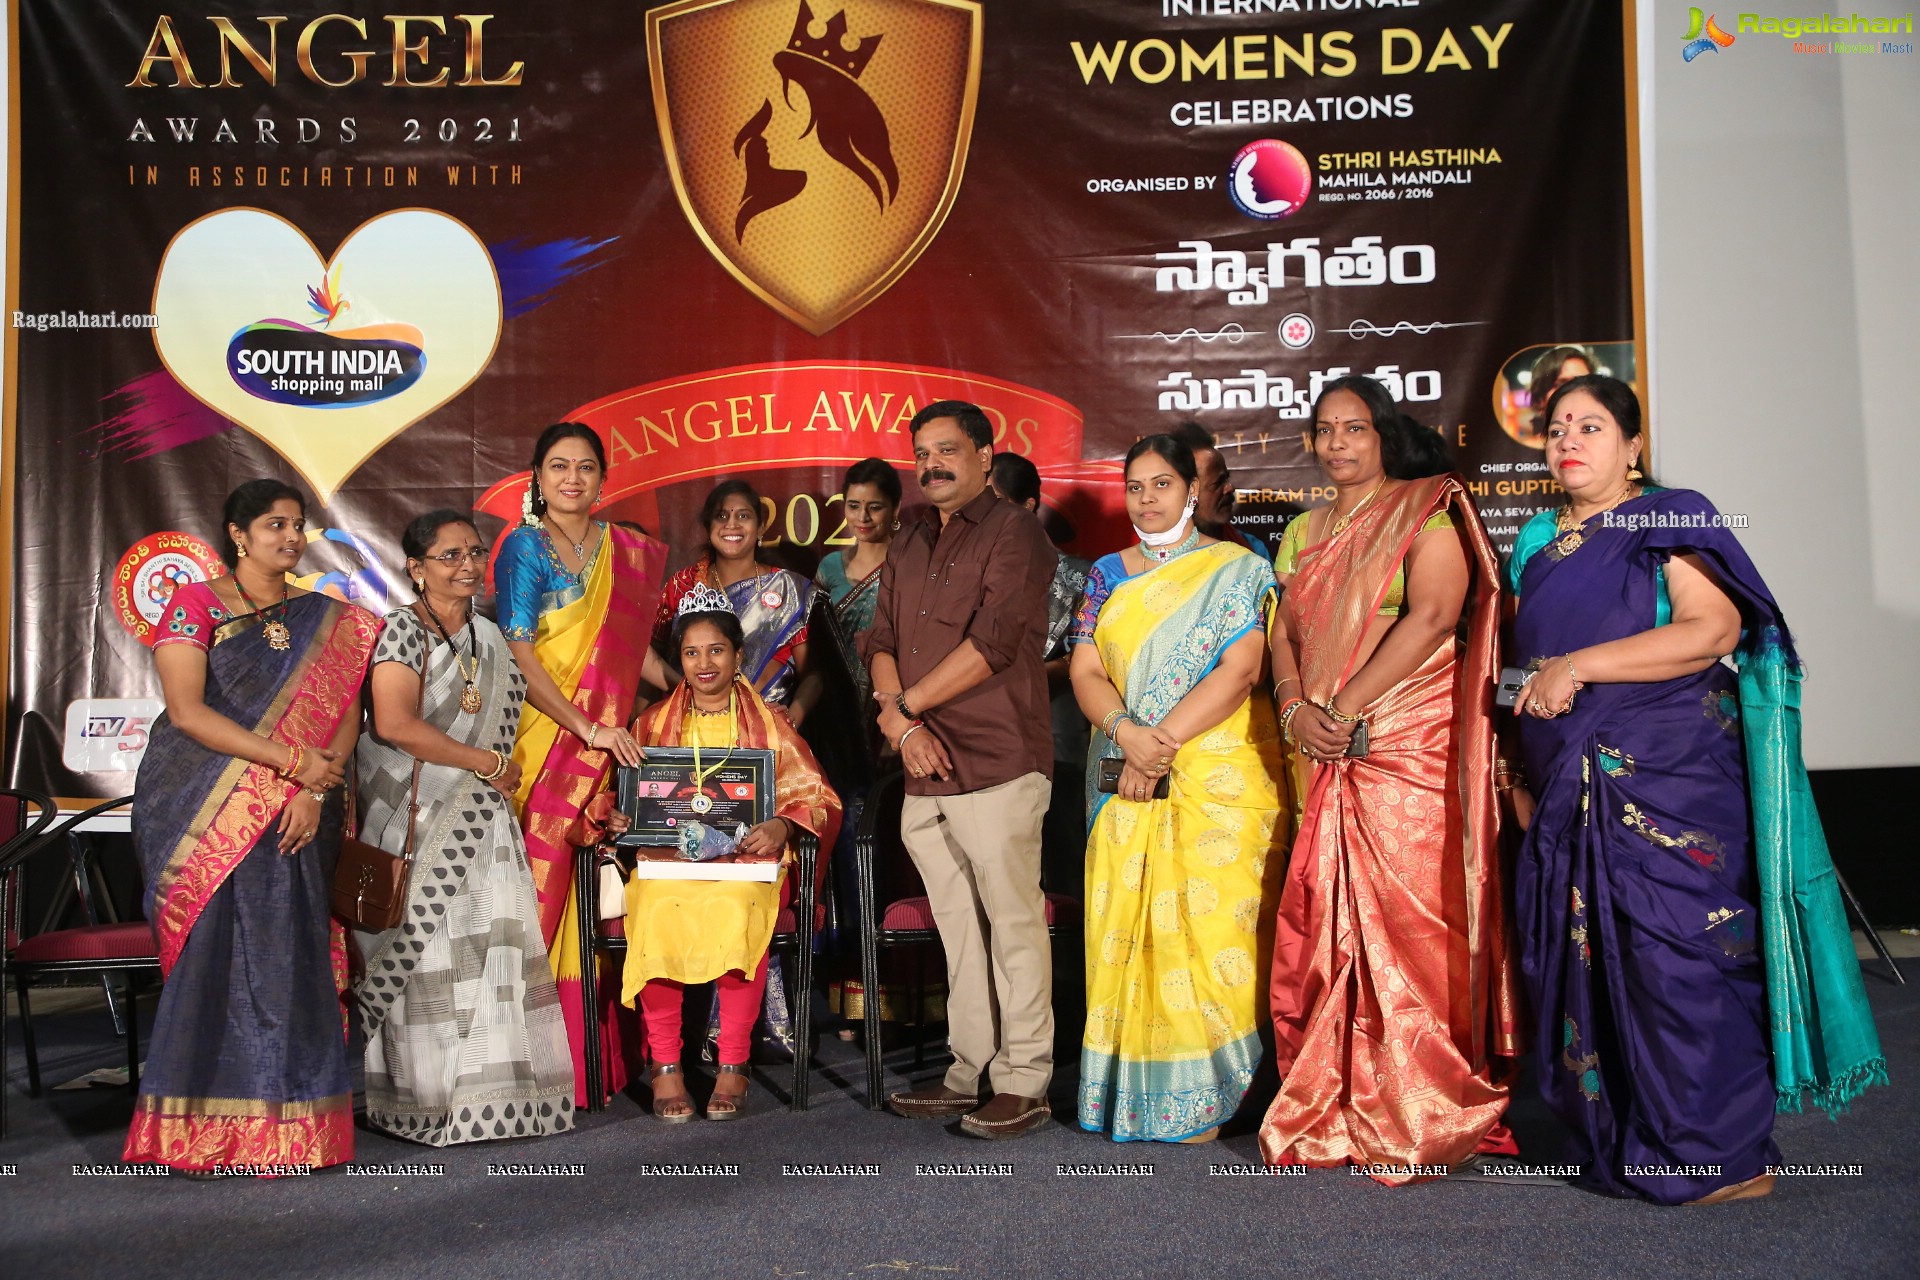 Angel Awards 2021 & International Women's Day Celebrations by Sthri Hasthina Mahila Mandali